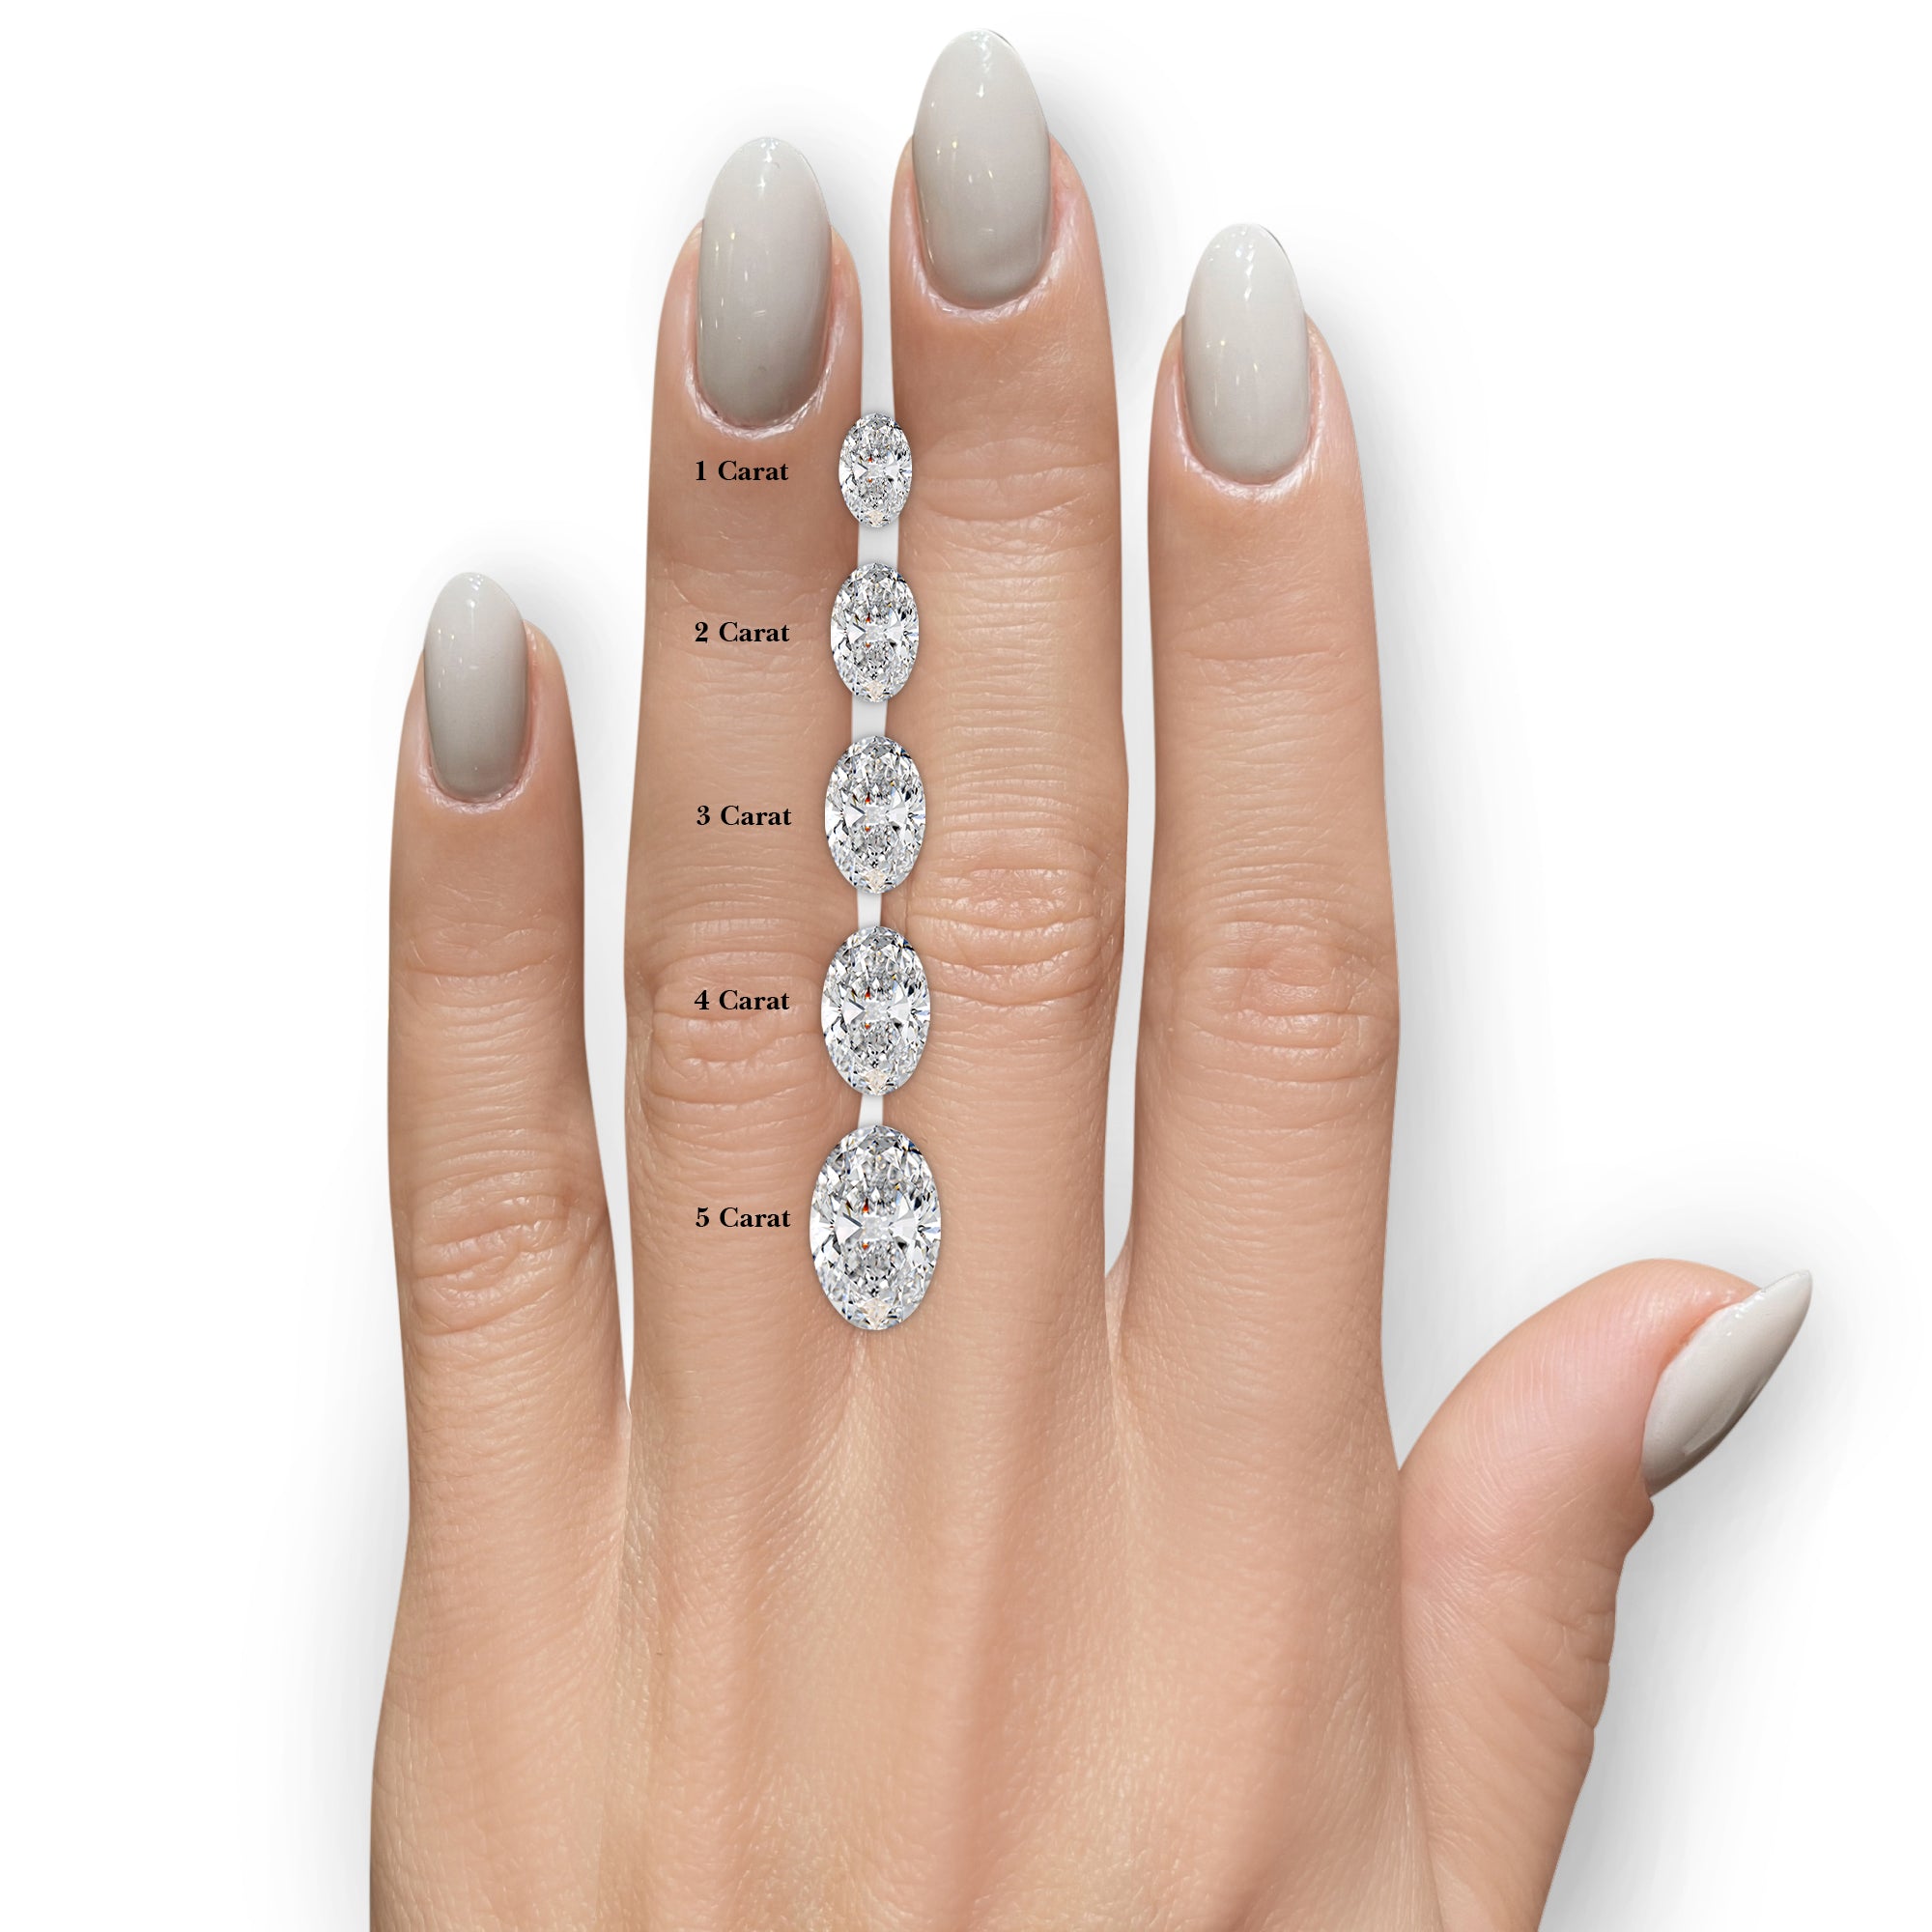 Kinley Diamond Engagement Ring -14K White Gold